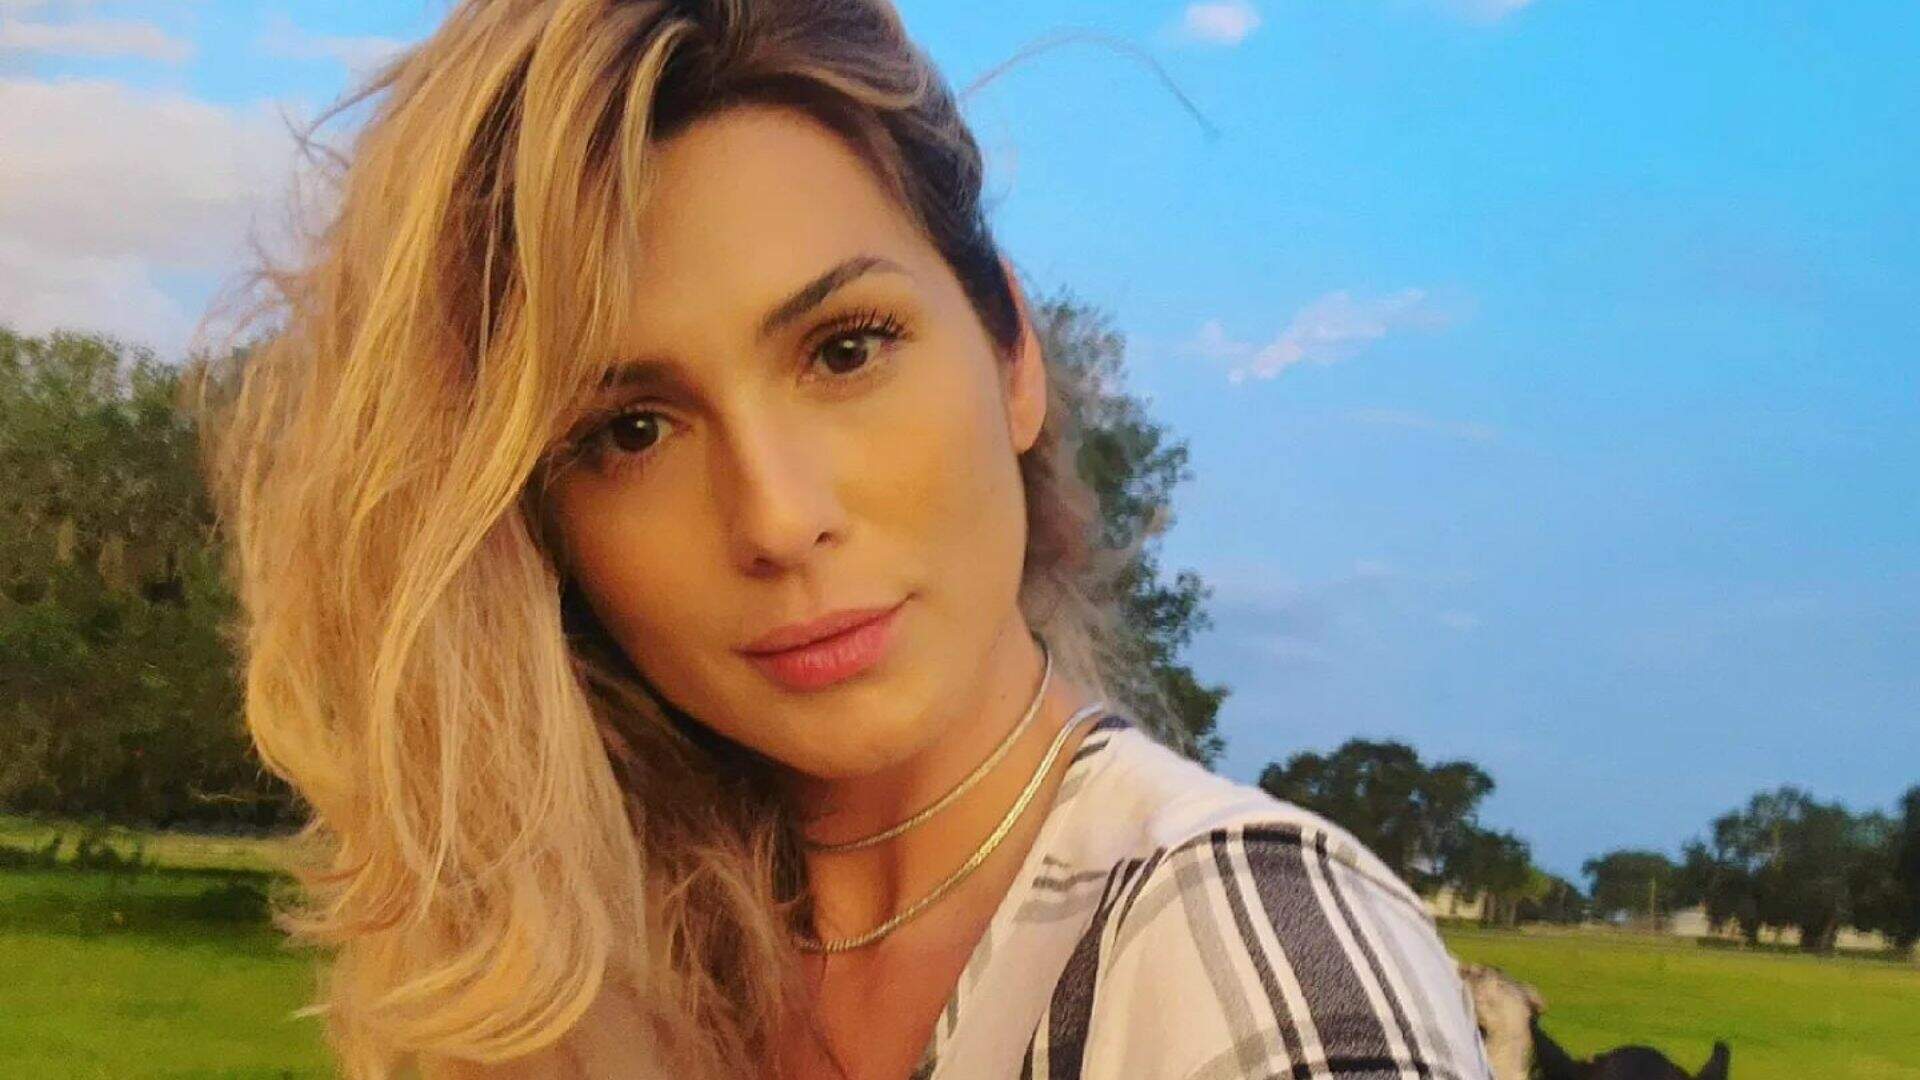 Lívia Andrade ostenta volumão traseiro impressionante com look de “sereia” no Instagram - Metropolitana FM